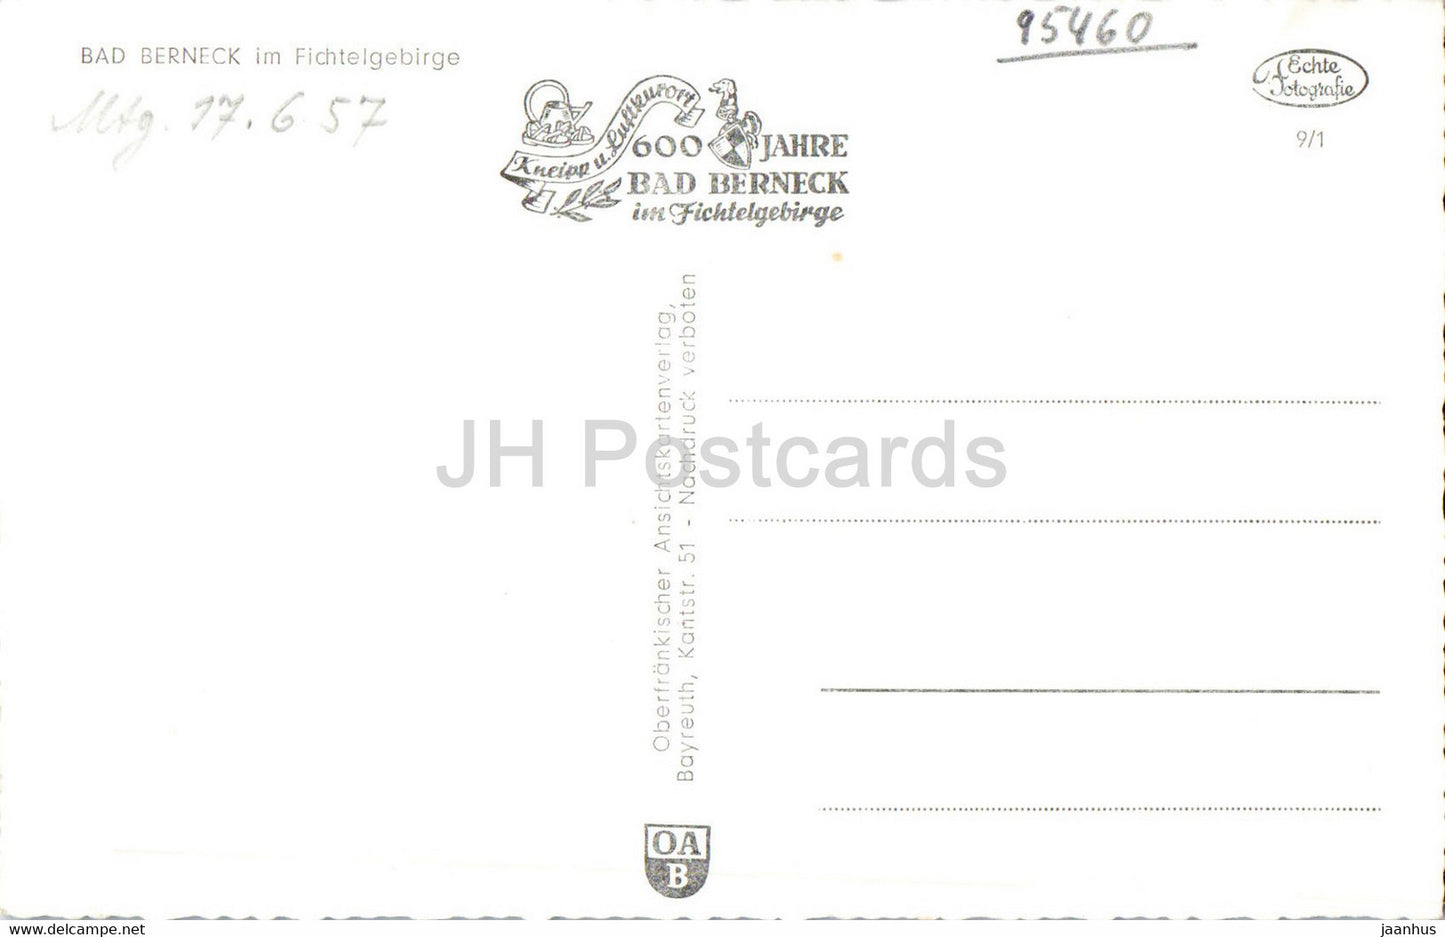 Bad Berneck im Fichtelgebirge - carte postale ancienne - Allemagne - inutilisée